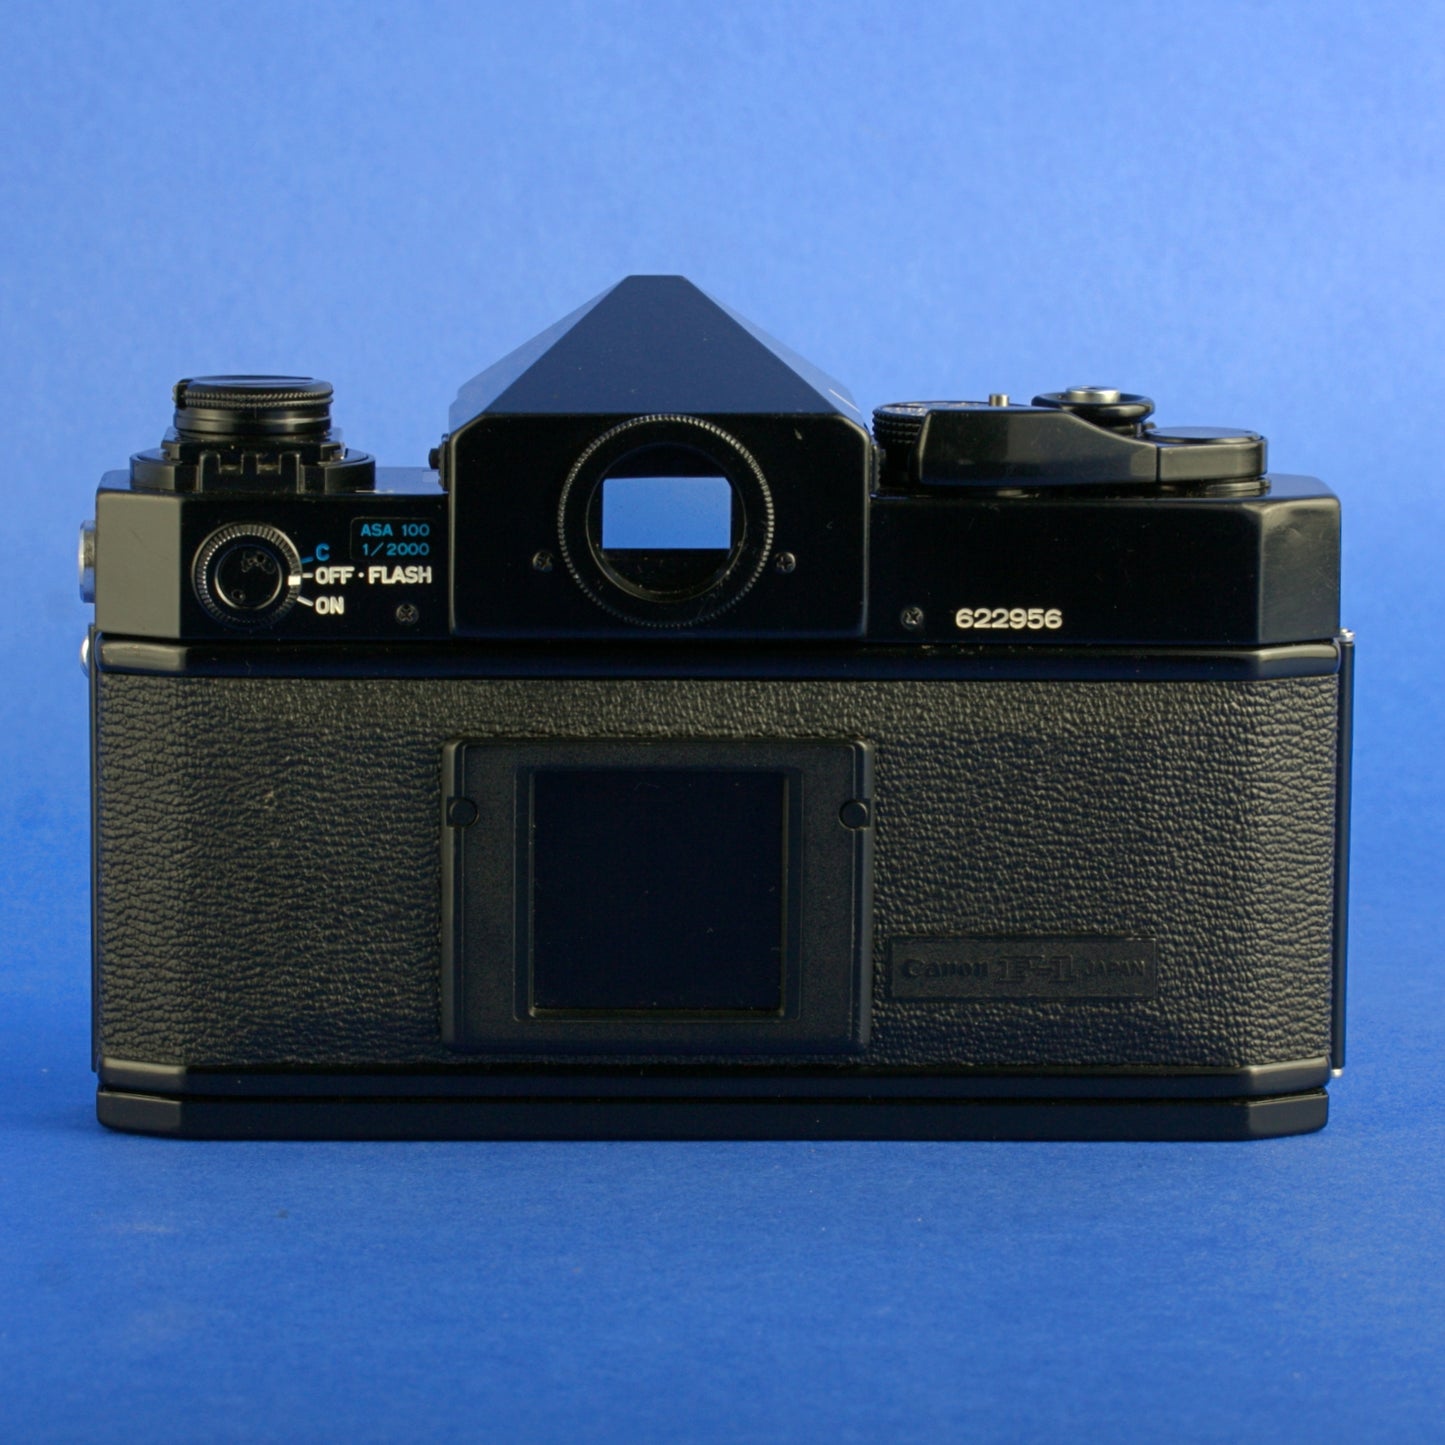 Canon F-1 Film Camera Body Beautiful Condition